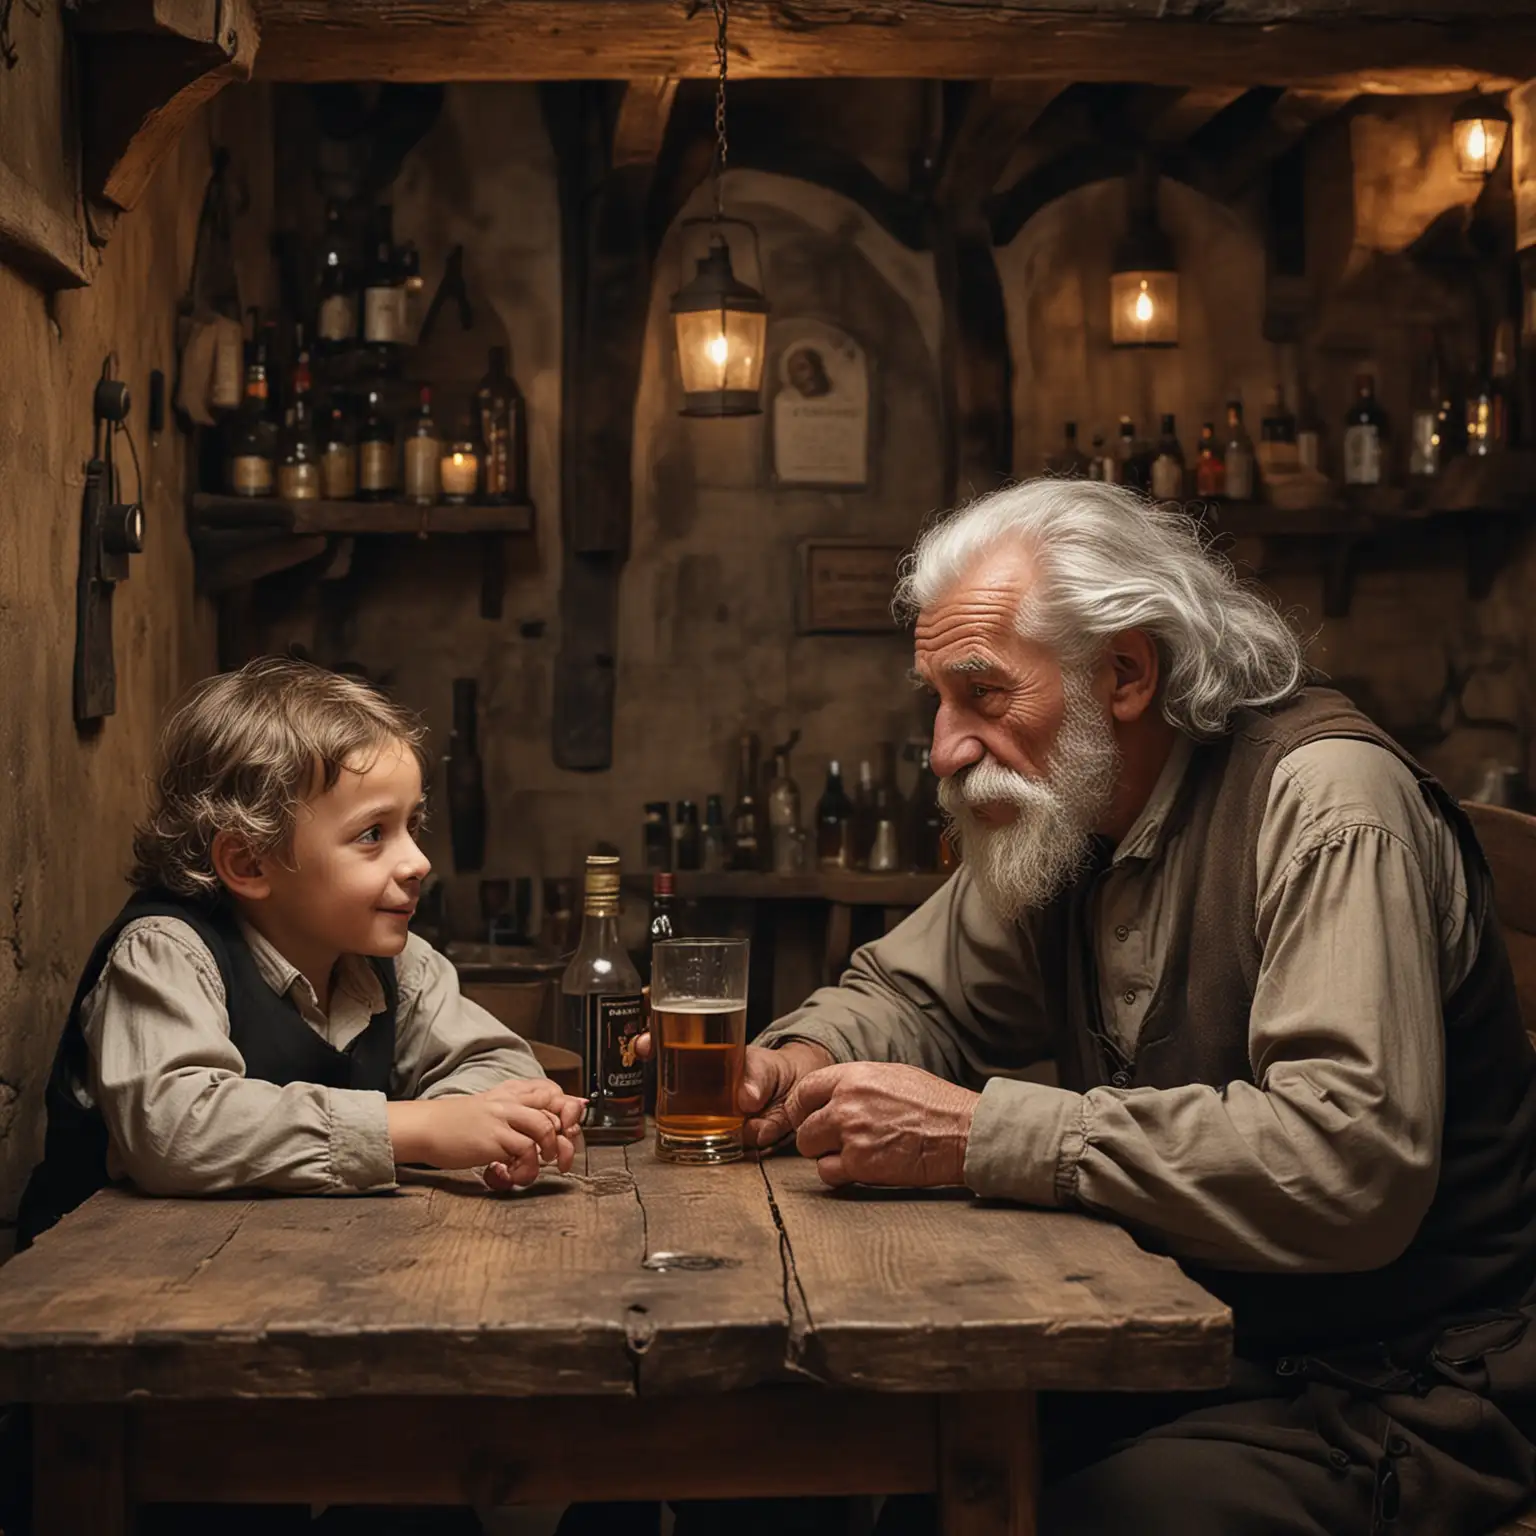 Ein alter Mann mit einer Frisur wie Albert Einstein und langem, grauen Bart, sitzt in einer mittelalterlichen Taverne an einem Tisch in der Ecke und trinkt Rum. Neben ihm sitzt ein kleiner Junge. 